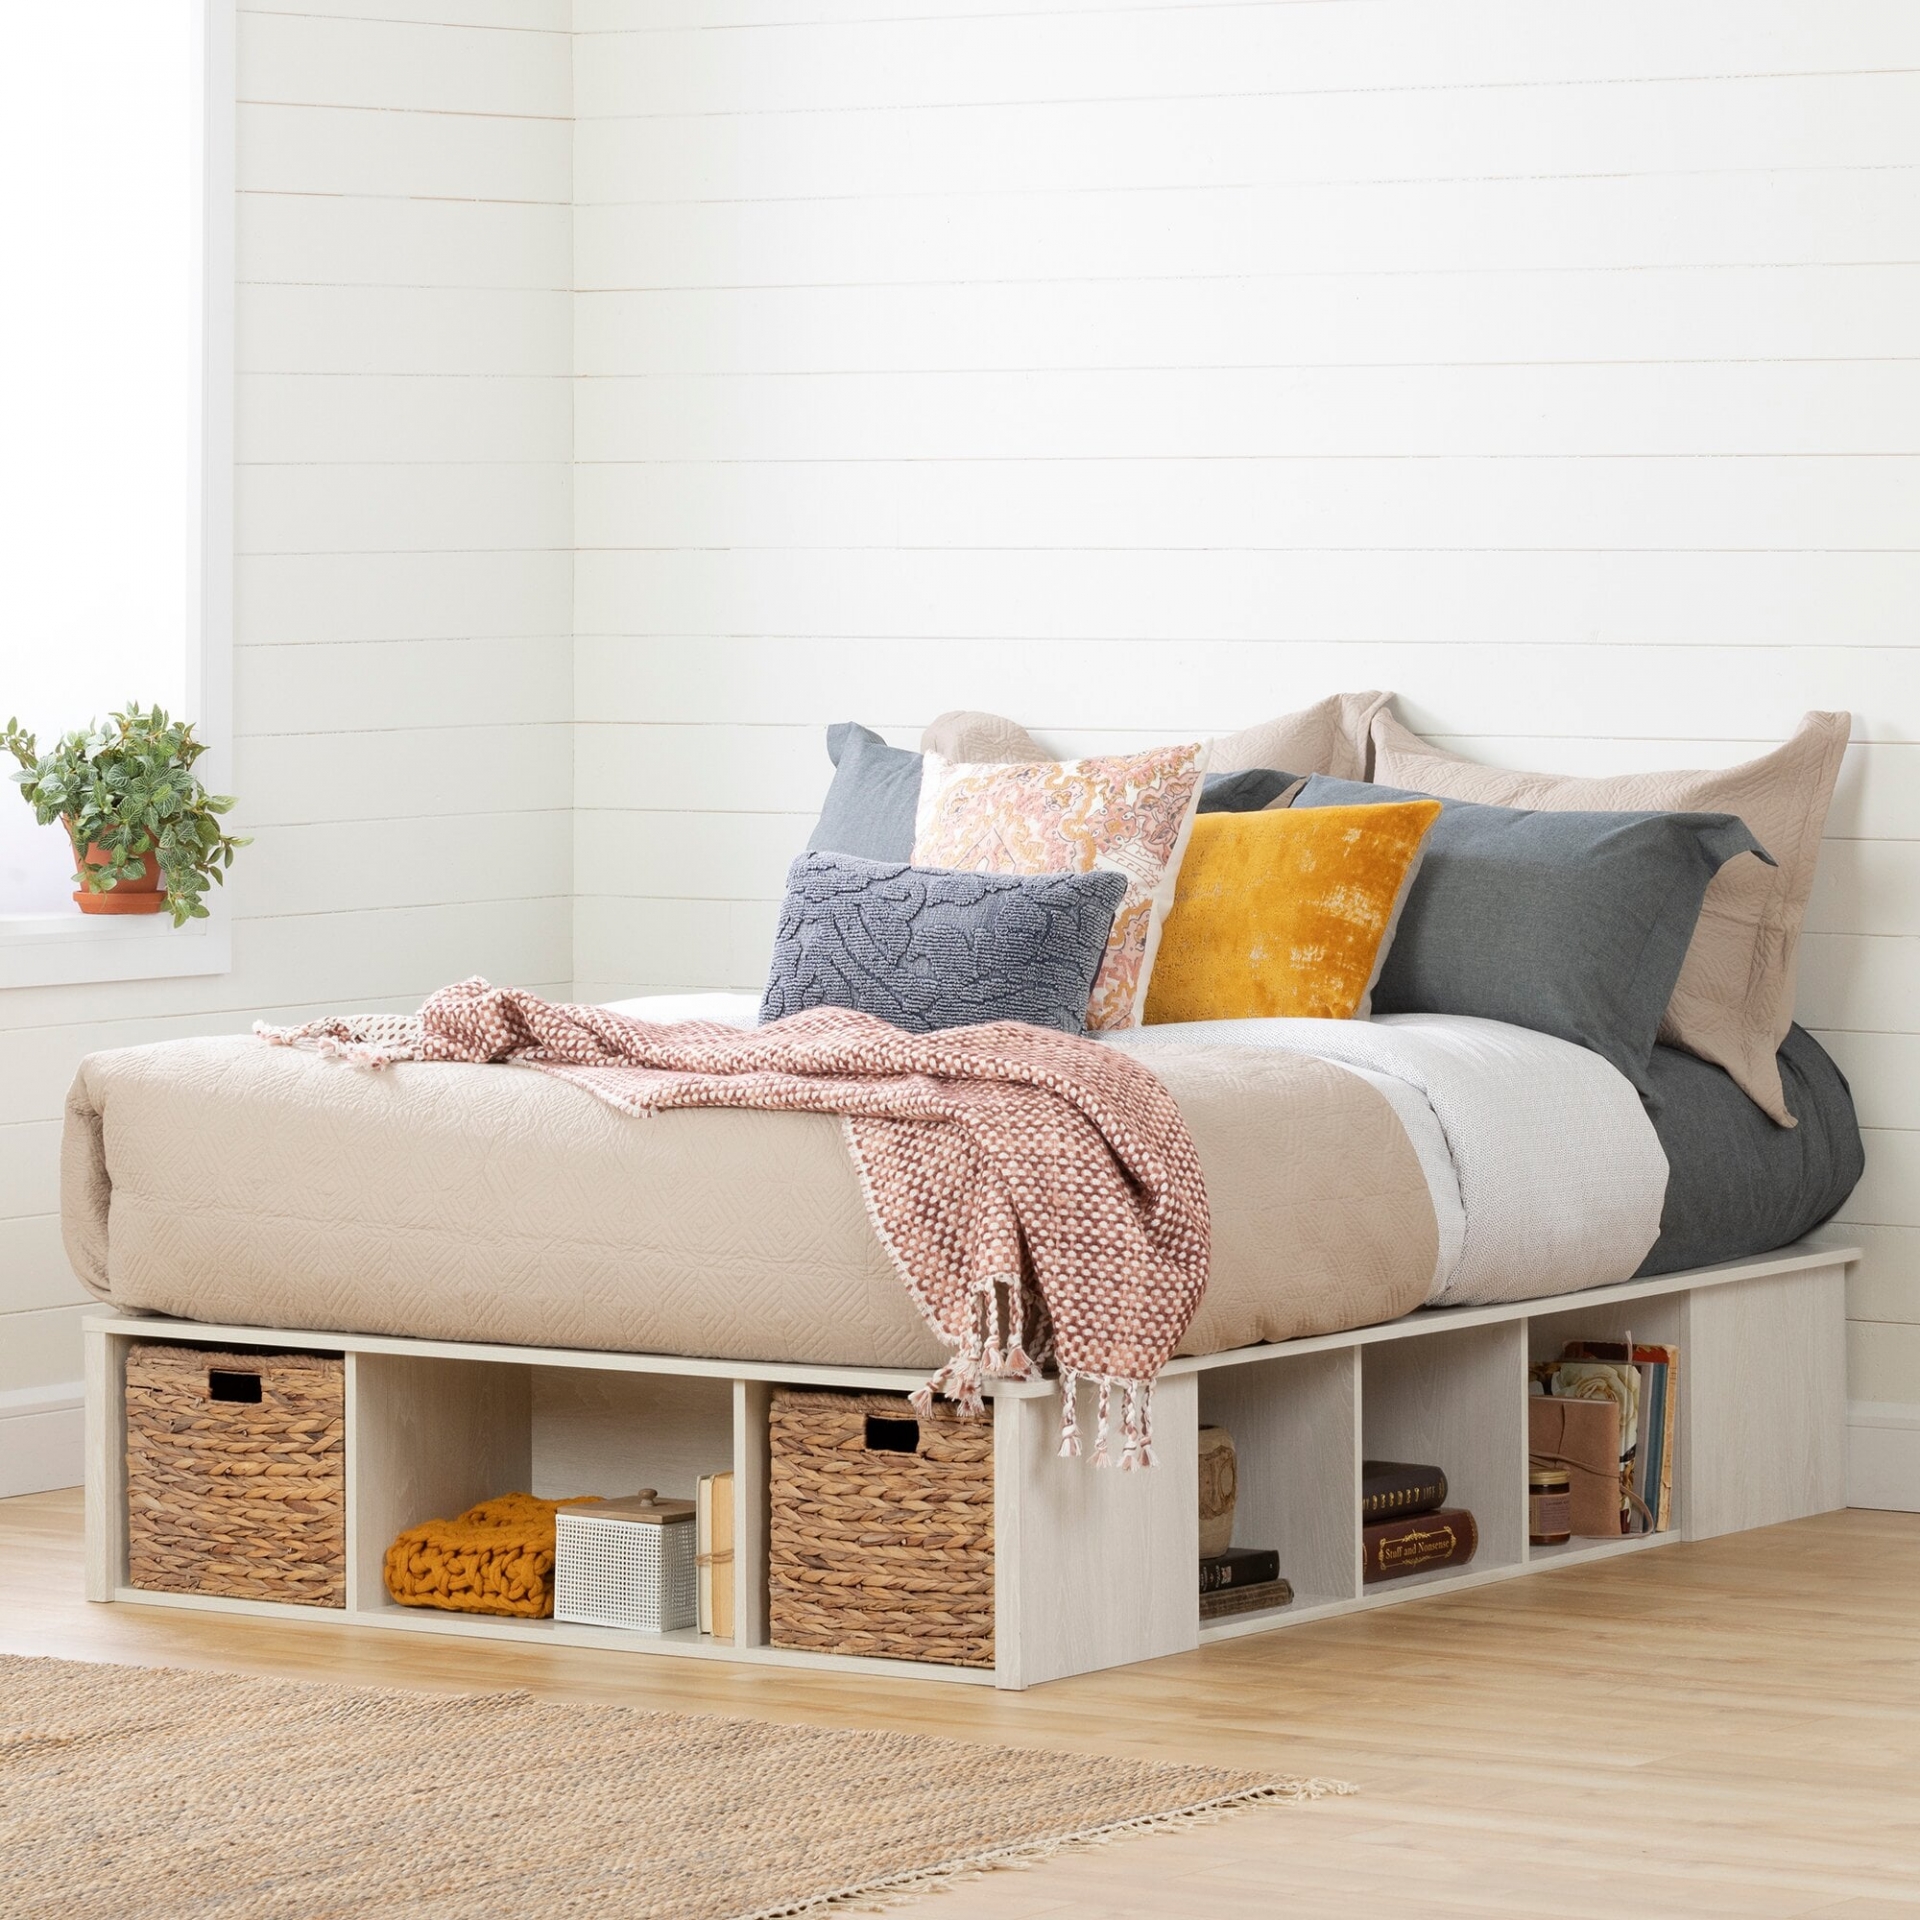 Những mẫu giường tích hợp không gian lưu trữ được xem là giải pháp tối ưu cho phòng ngủ nhỏ.